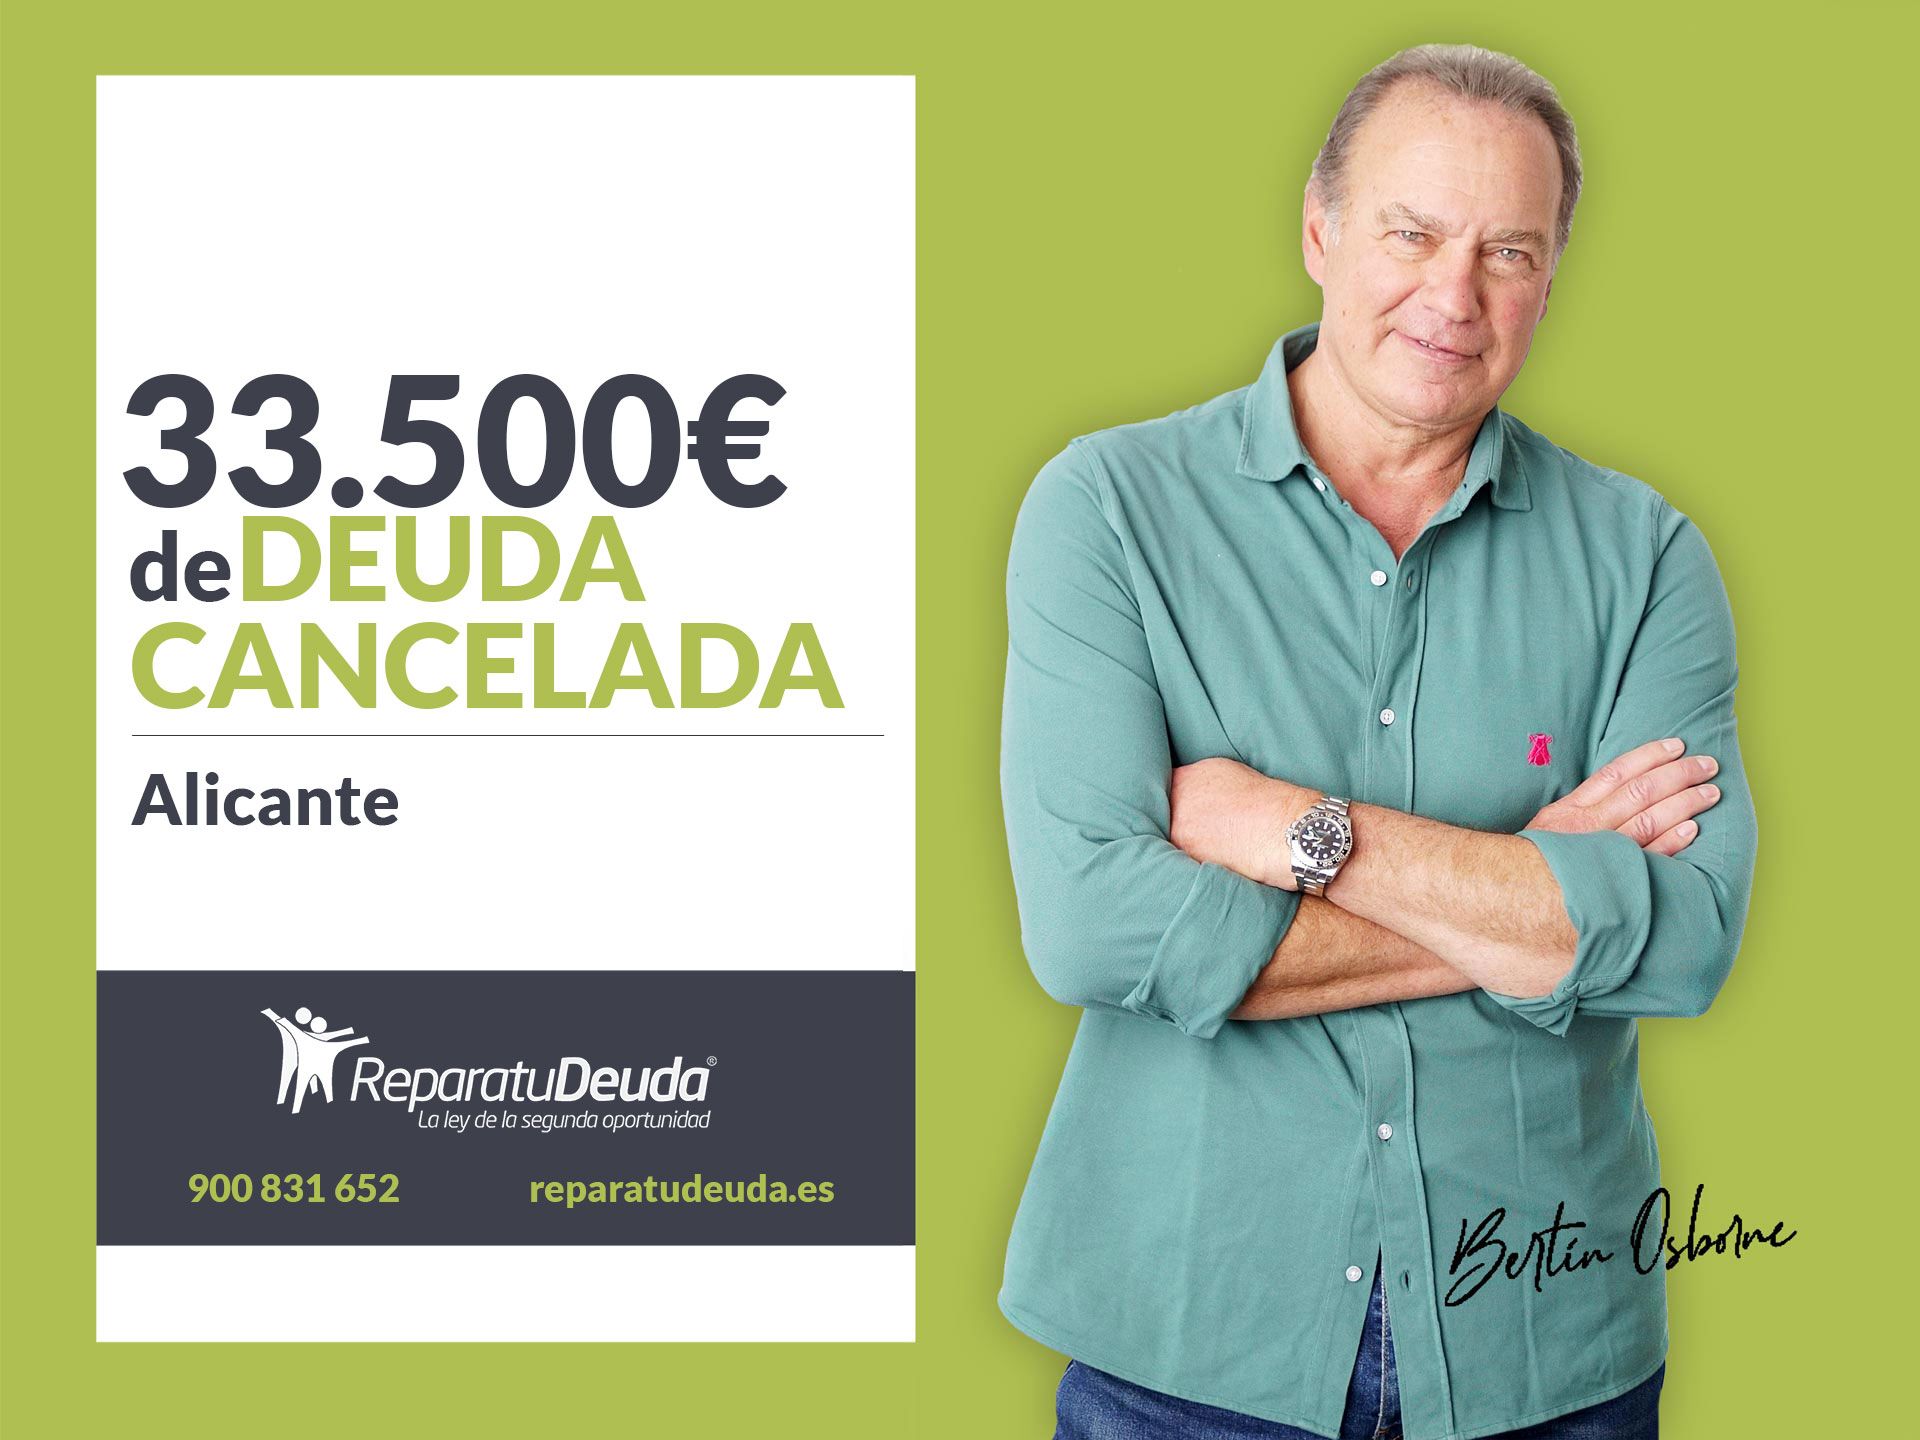 Repara tu Deuda cancela 33.500? en Alicante (Comunidad Valenciana) con la Ley de la Segunda Oportunidad